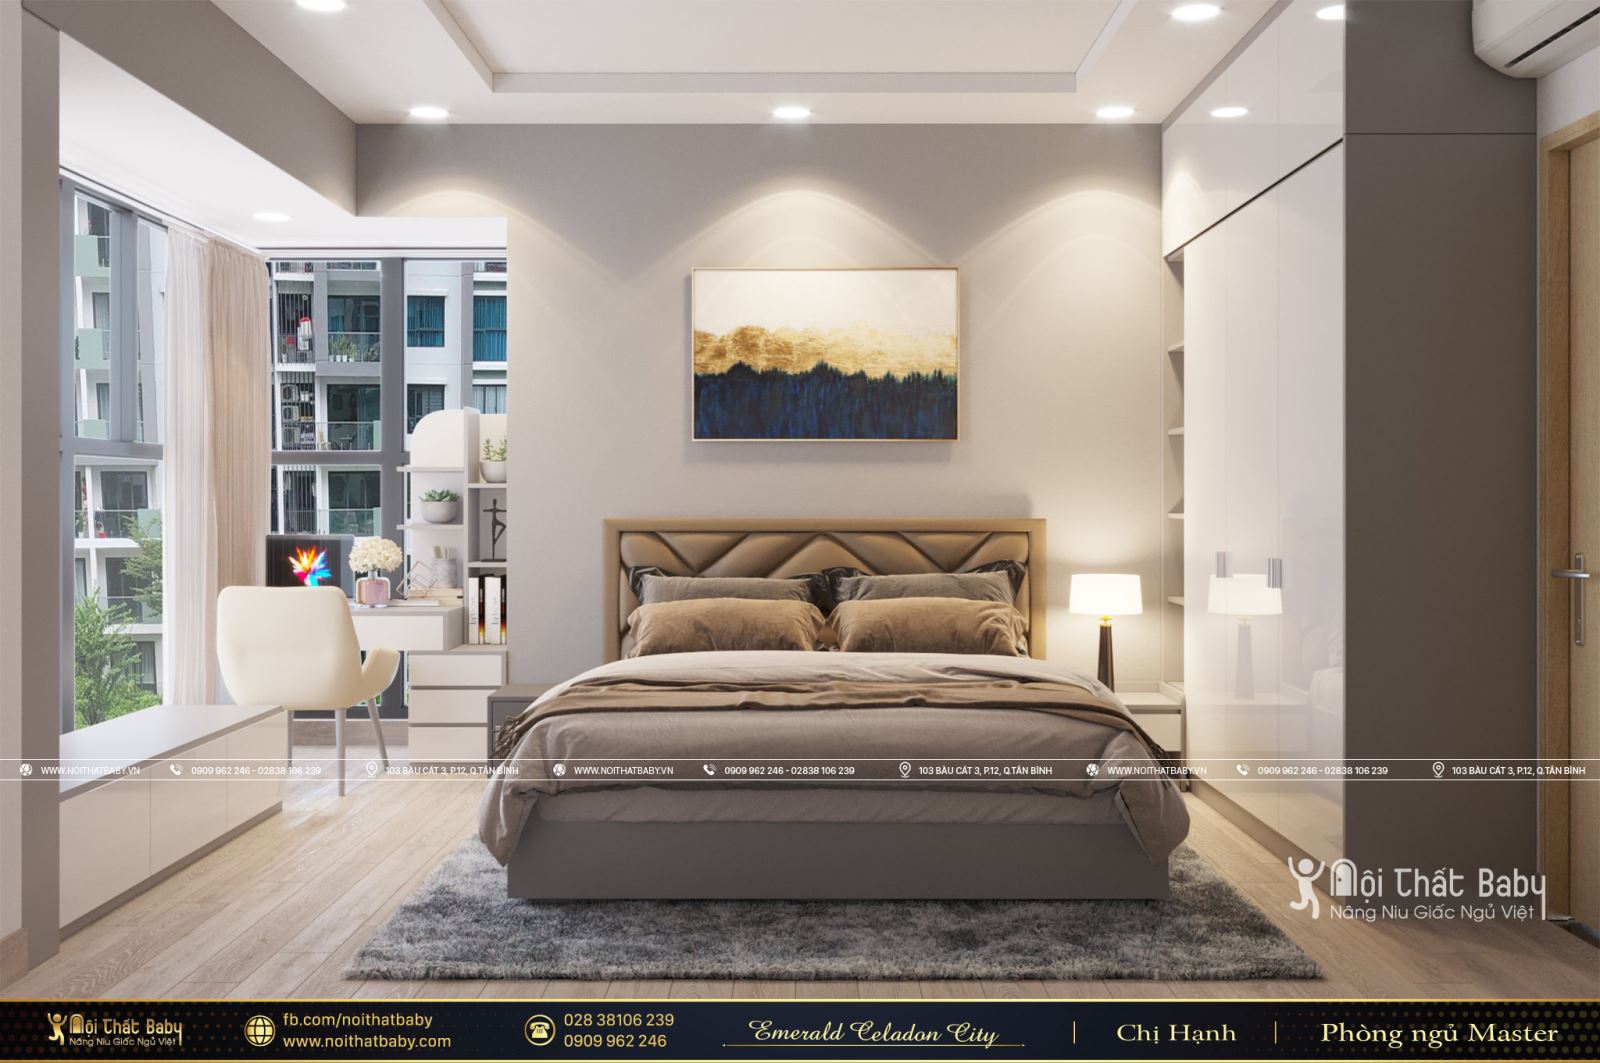 Thiết kế và thi công nội thất chung cư hiện đại căn hộ Emerald Celadon City 112m2